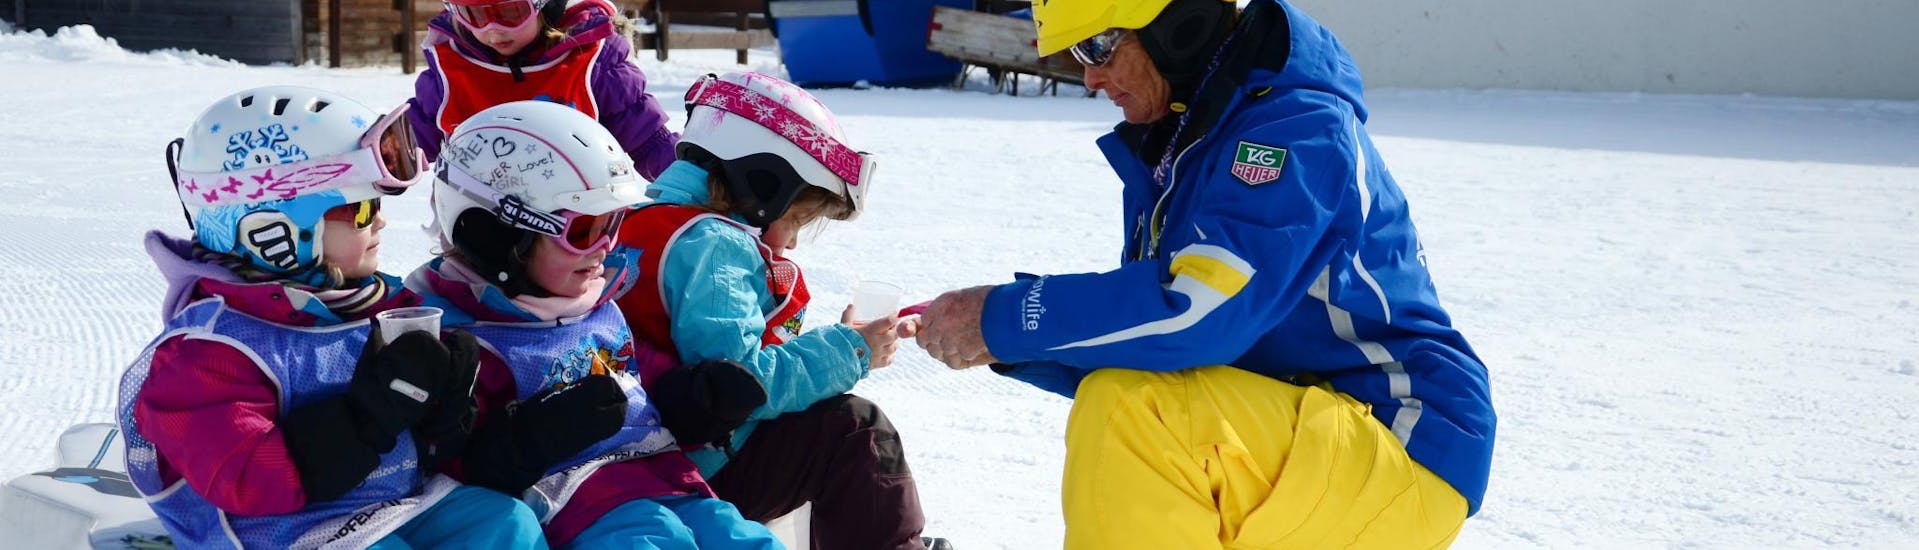 Lezioni di sci per bambini "Bolgen" (4-7 anni) - Principianti assoluti.